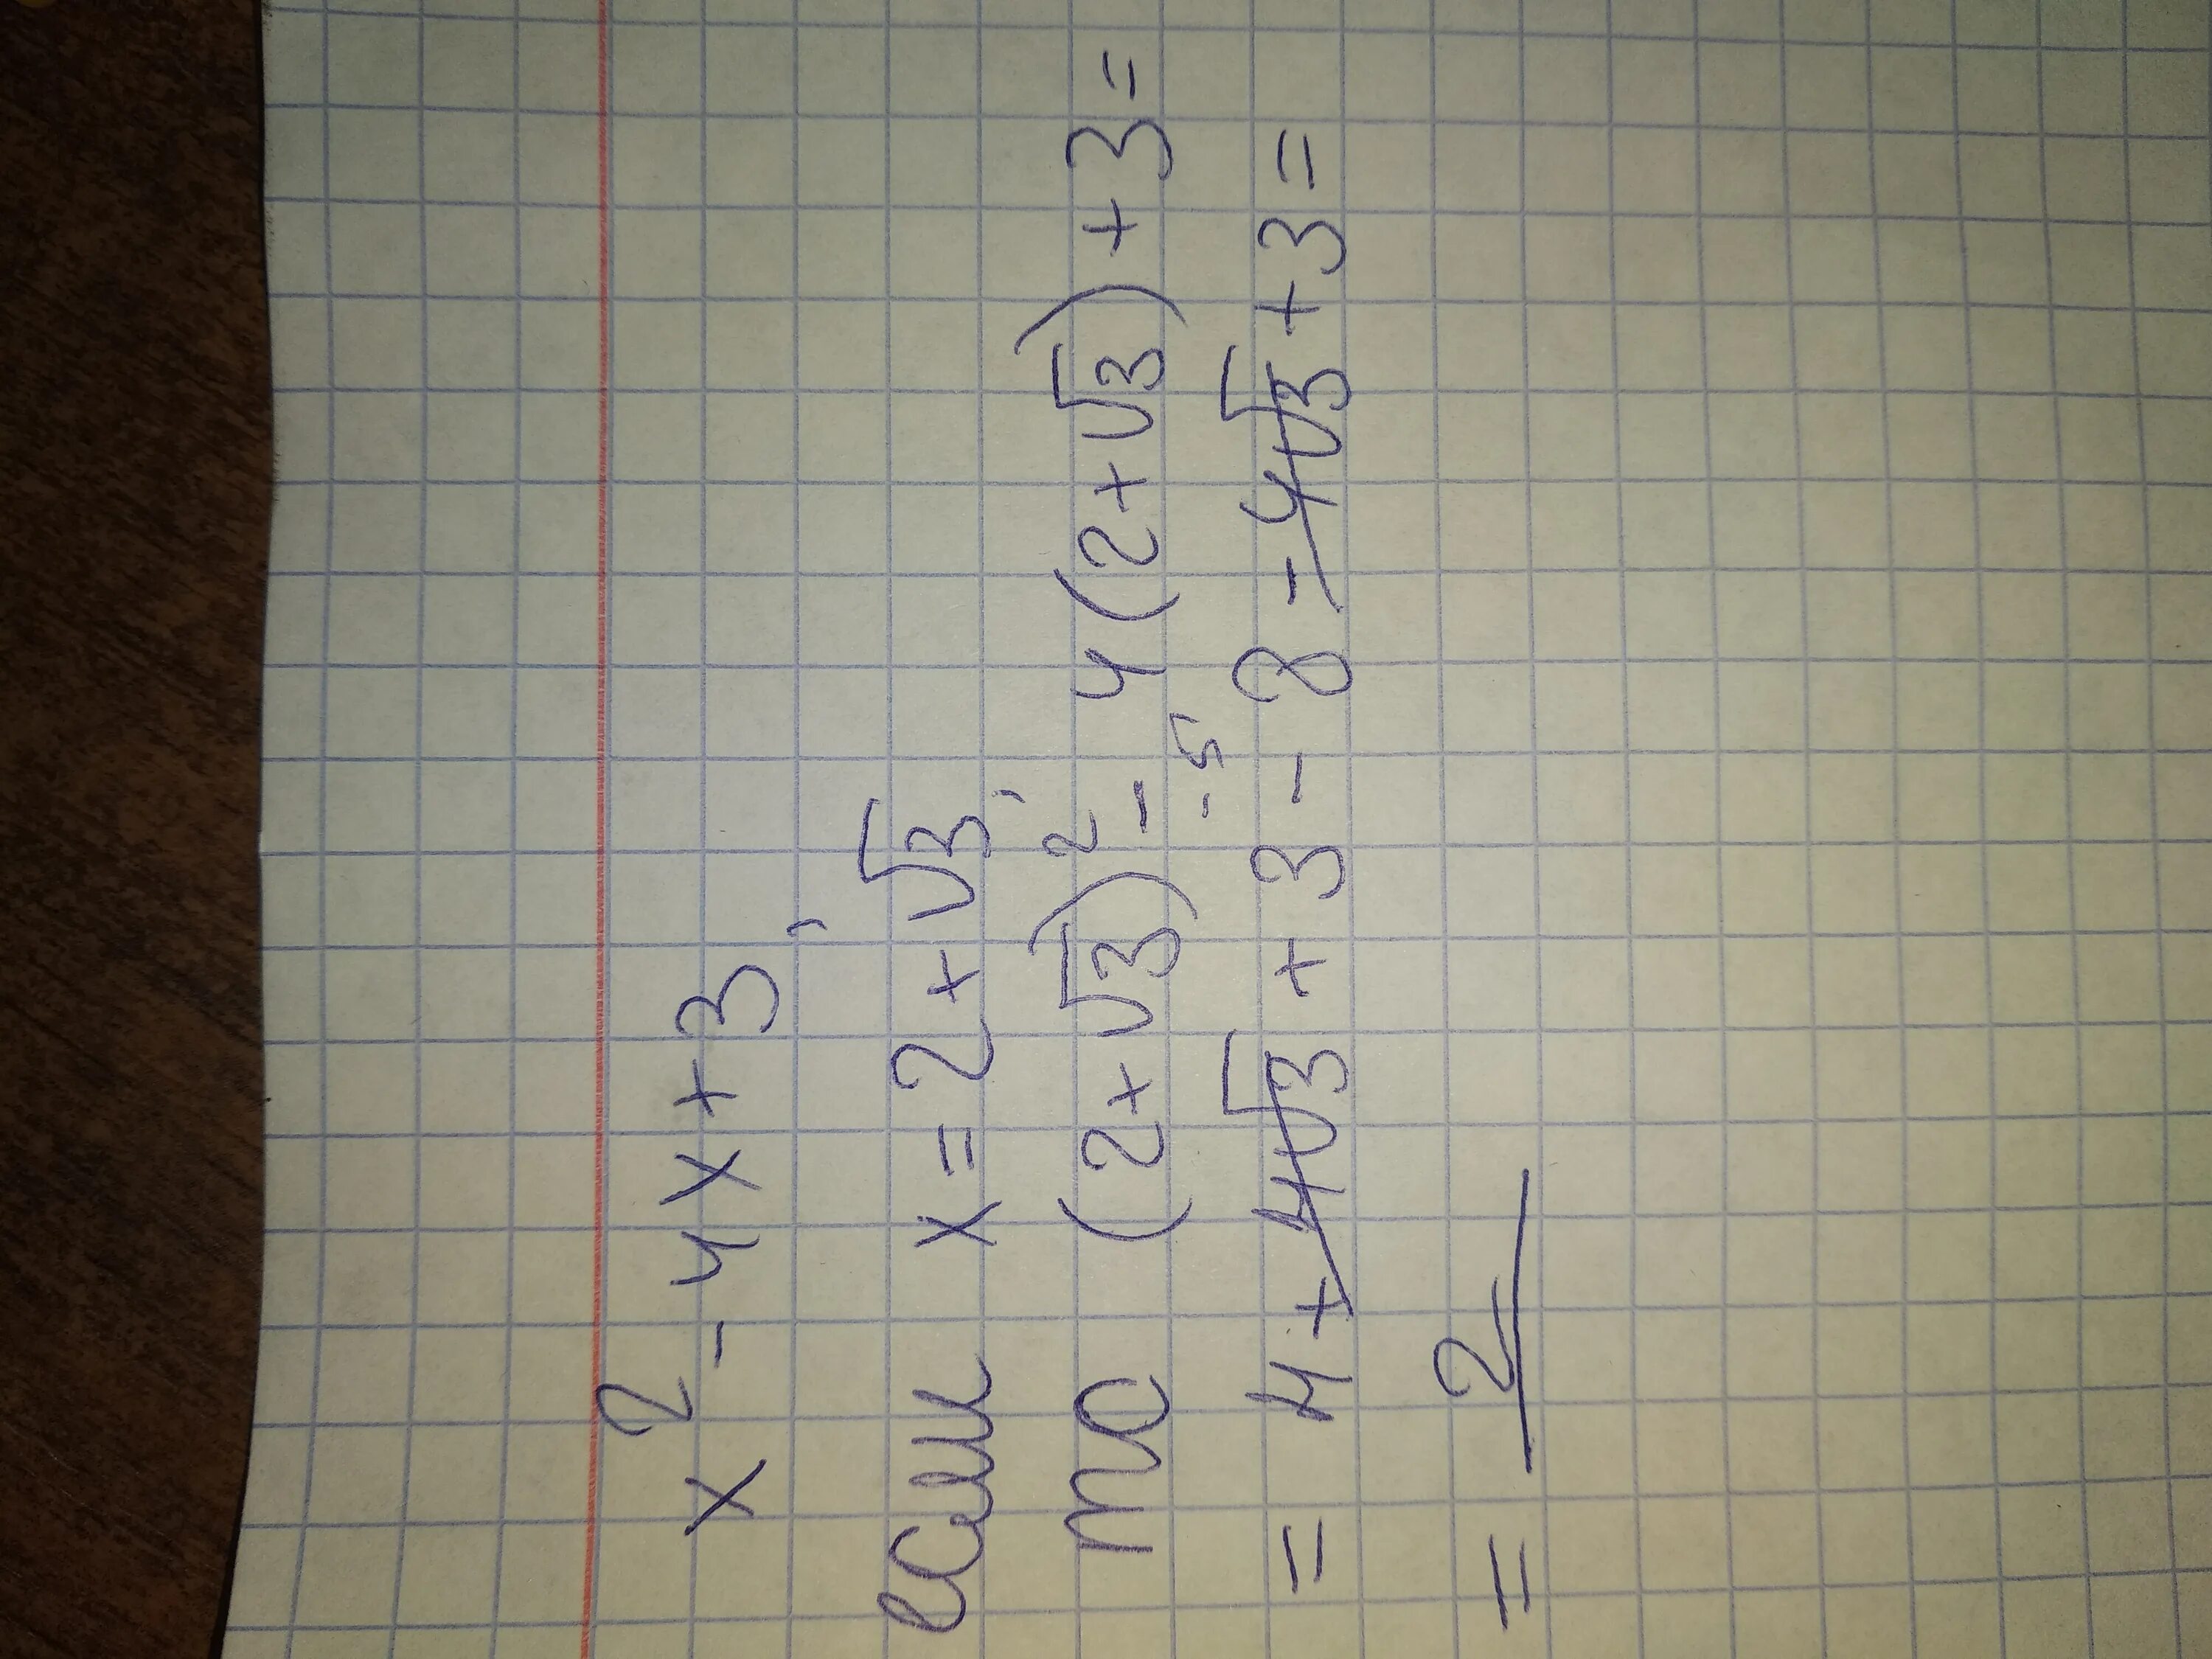 5х 2х 14 при х 14. 2х-3 при х=-3. 3+2х при х 2. 2 2 2 3 3. √(3√2-5)^2+3√2.